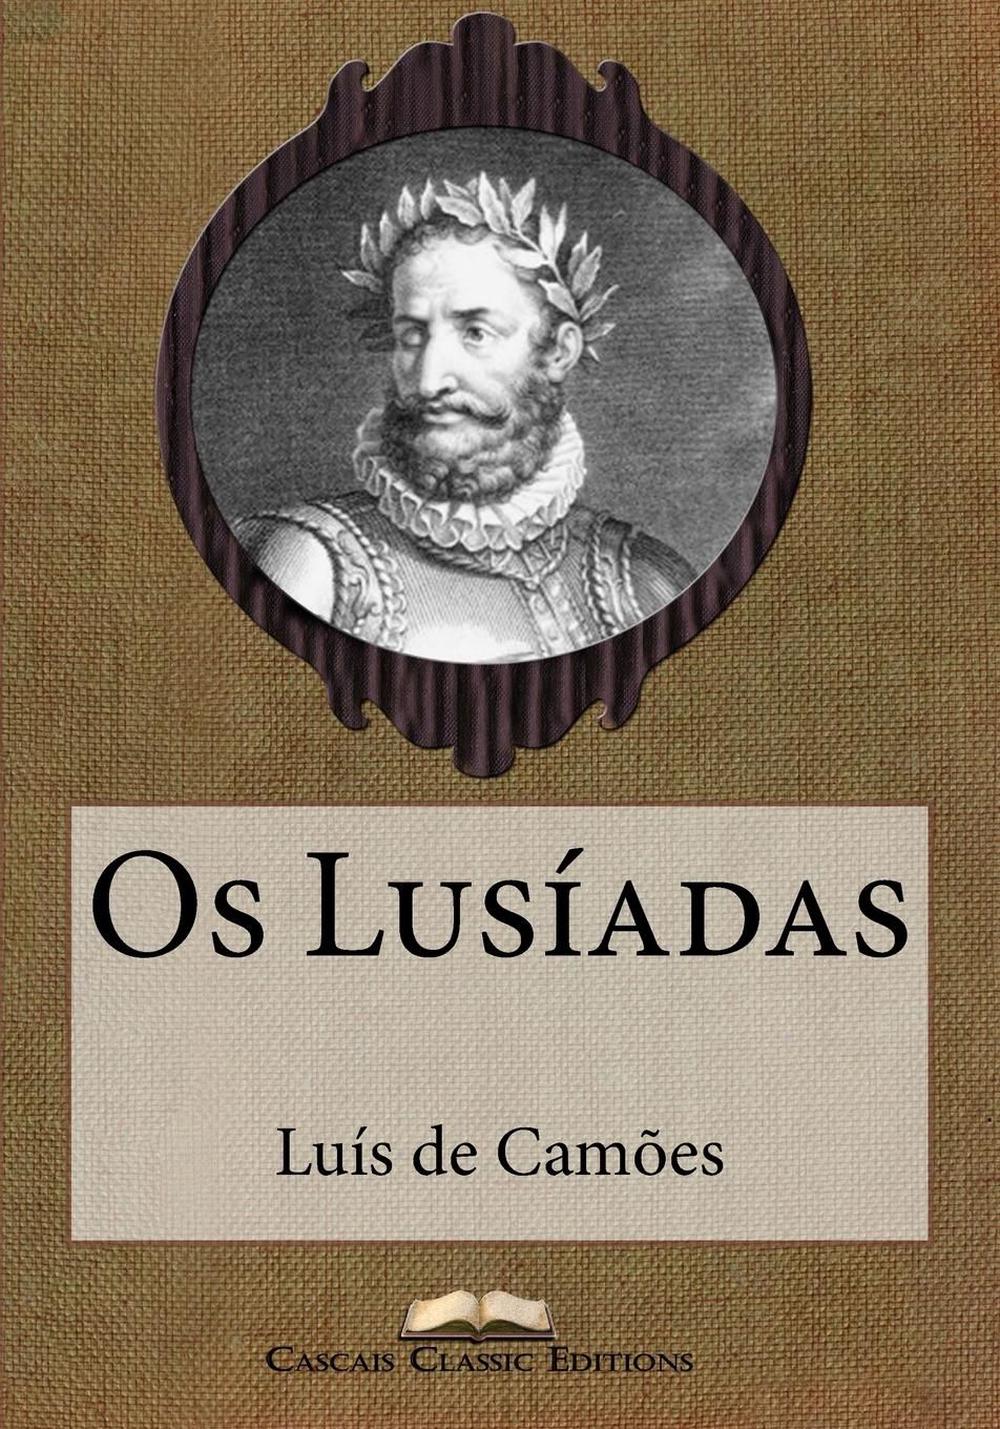 The Lusiads by Luís de Camões